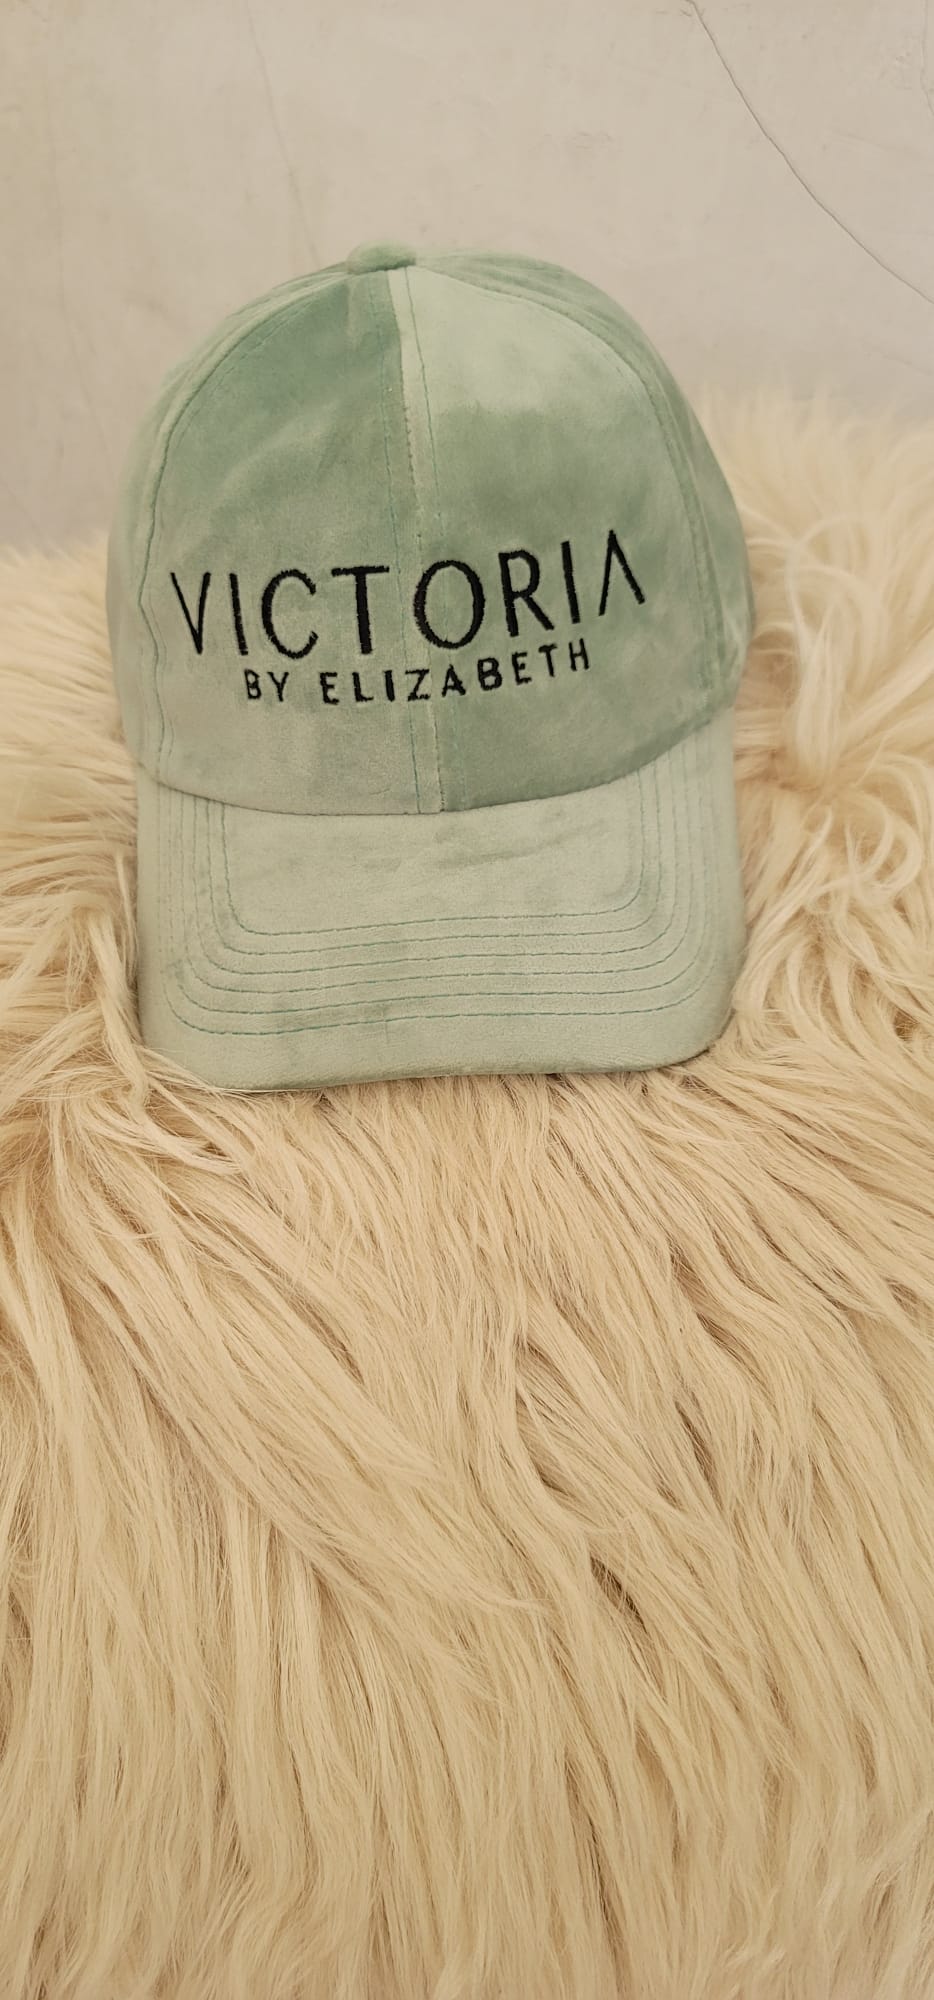 Victoria by Elizabeth